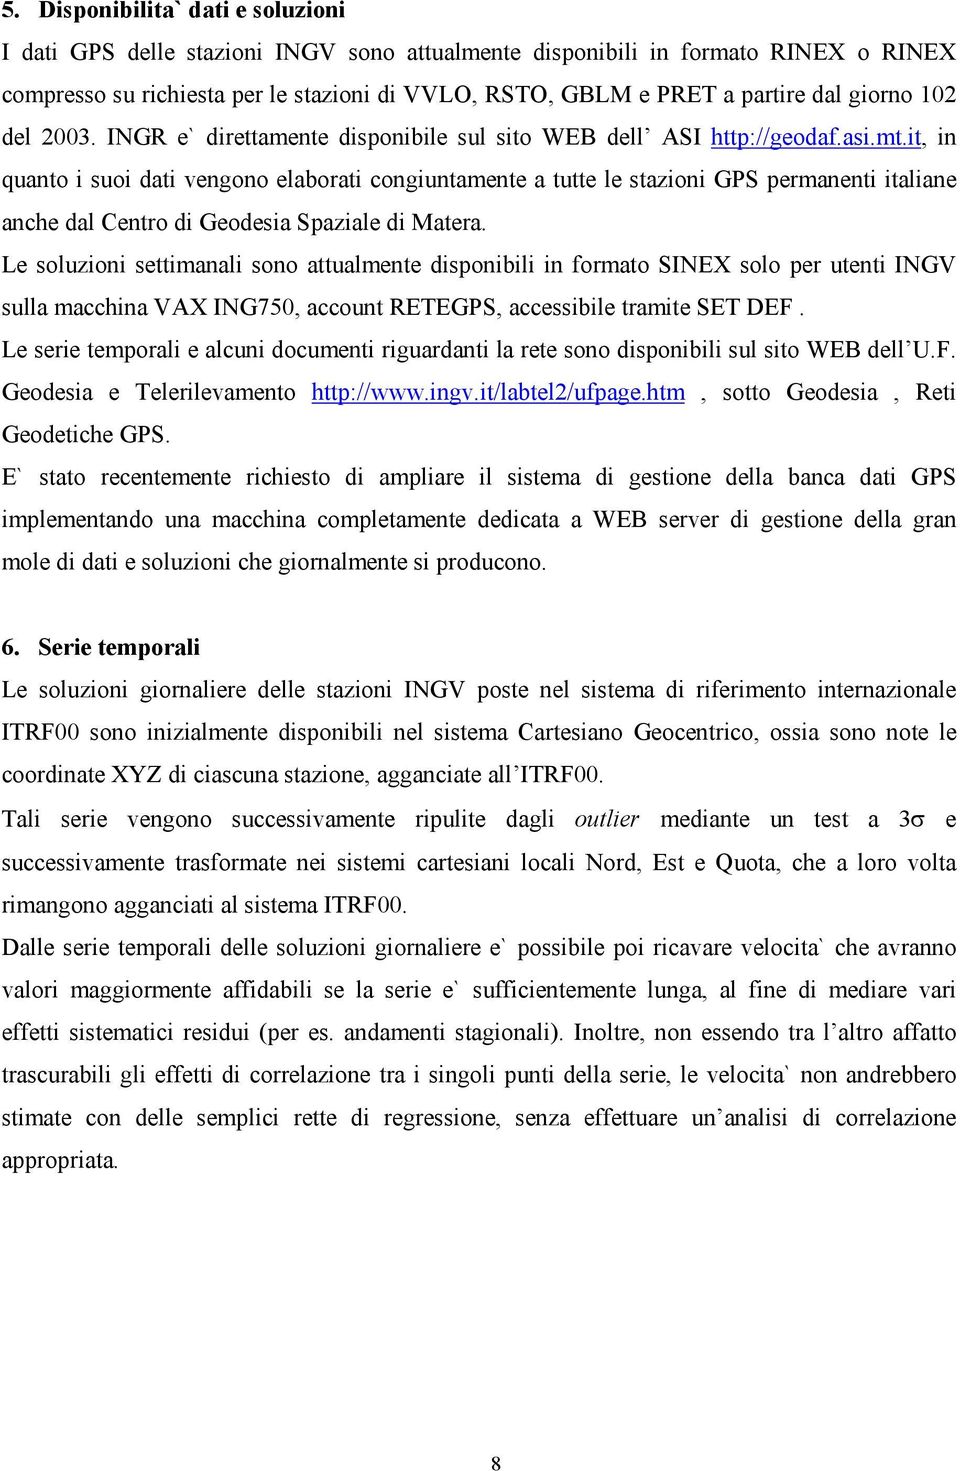 it, in quanto i suoi dati vengono elaborati congiuntamente a tutte le stazioni GPS permanenti italiane anche dal Centro di Geodesia Spaziale di Matera.